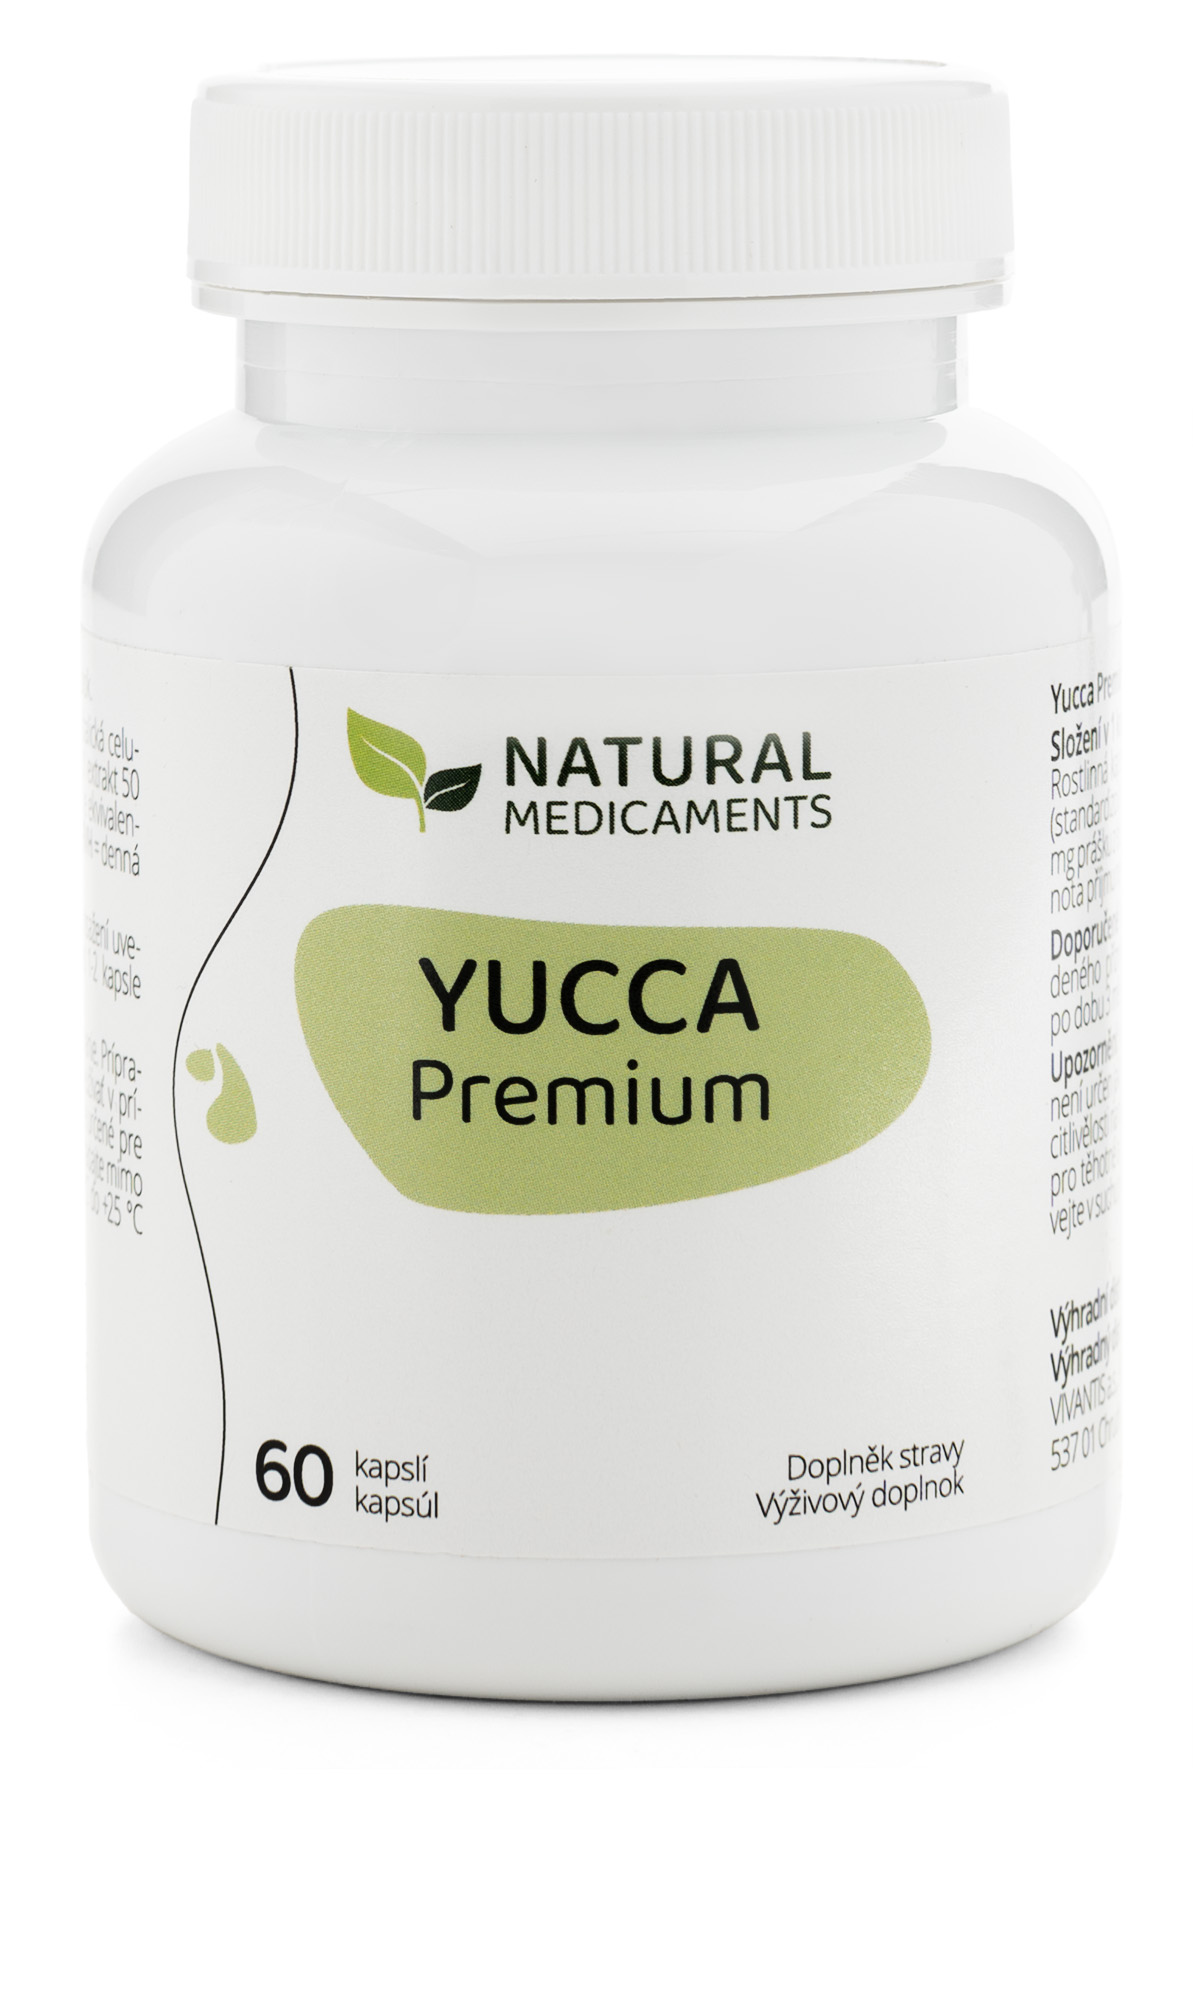 Zobrazit detail výrobku Natural Medicaments Yucca Premium 60 kapslí